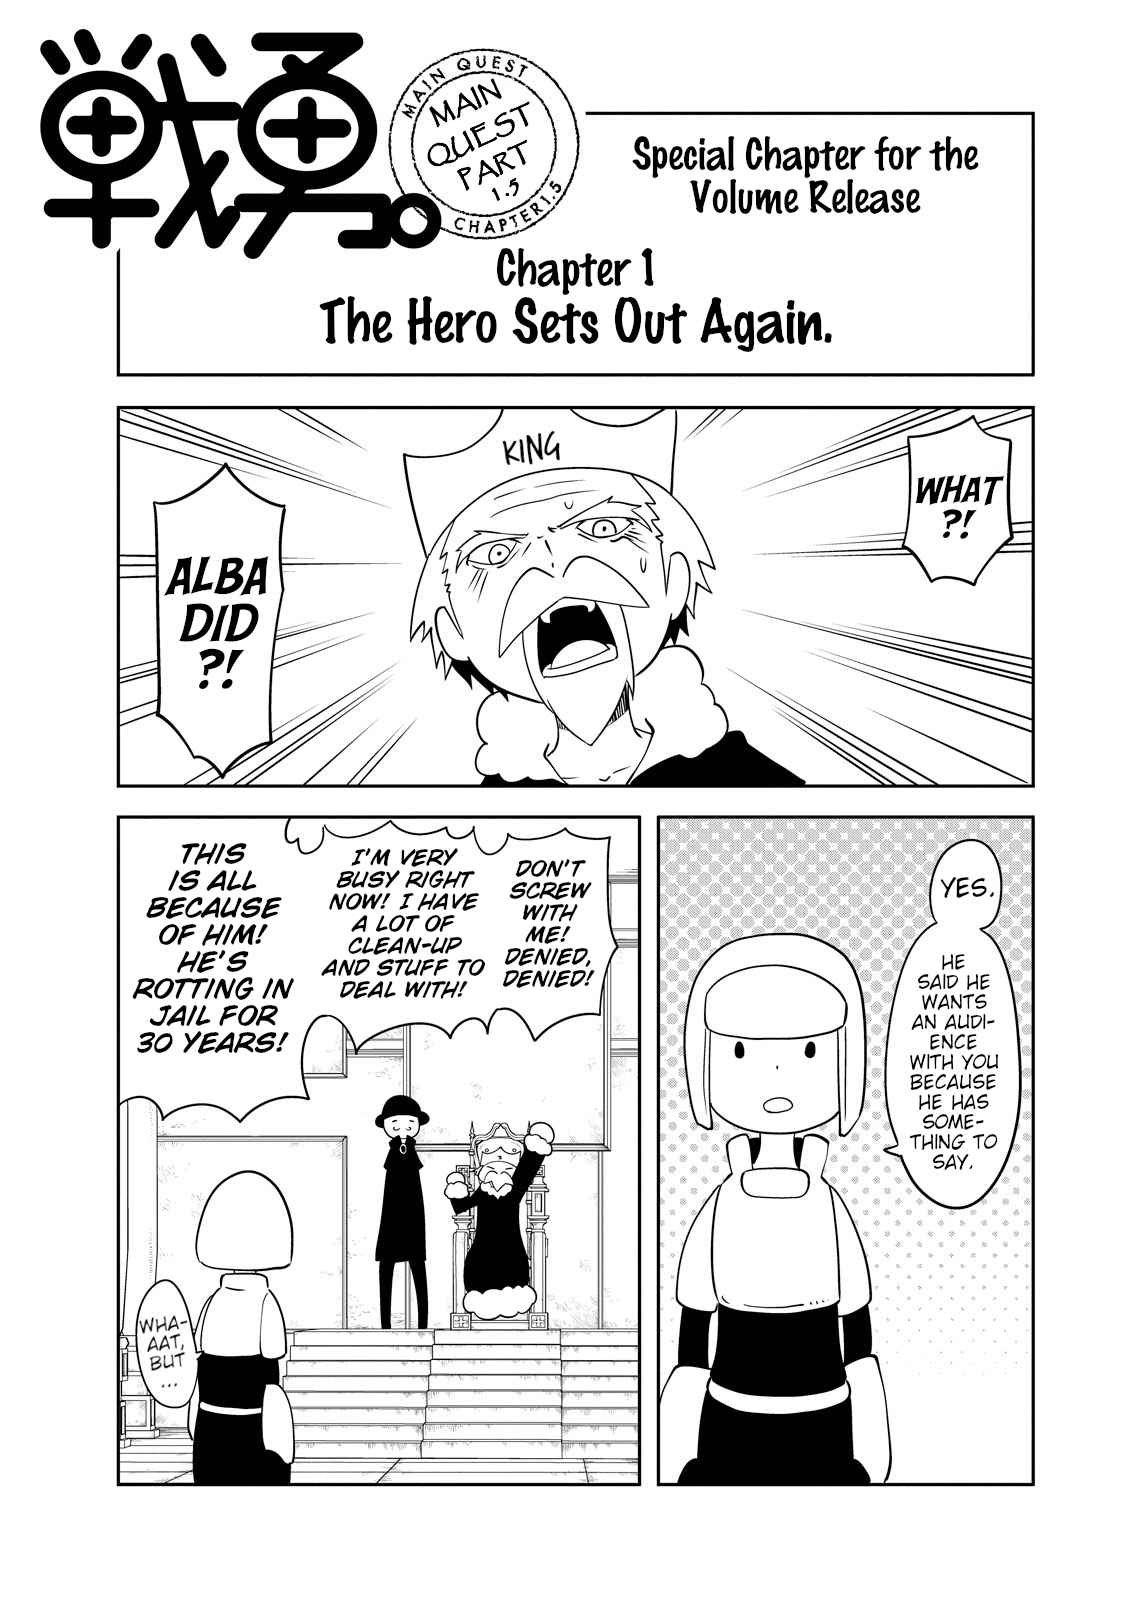 Senyuu. Main Quest Part 2 Vol. 1 Ch. 10.1 The Hero Sets Out Again